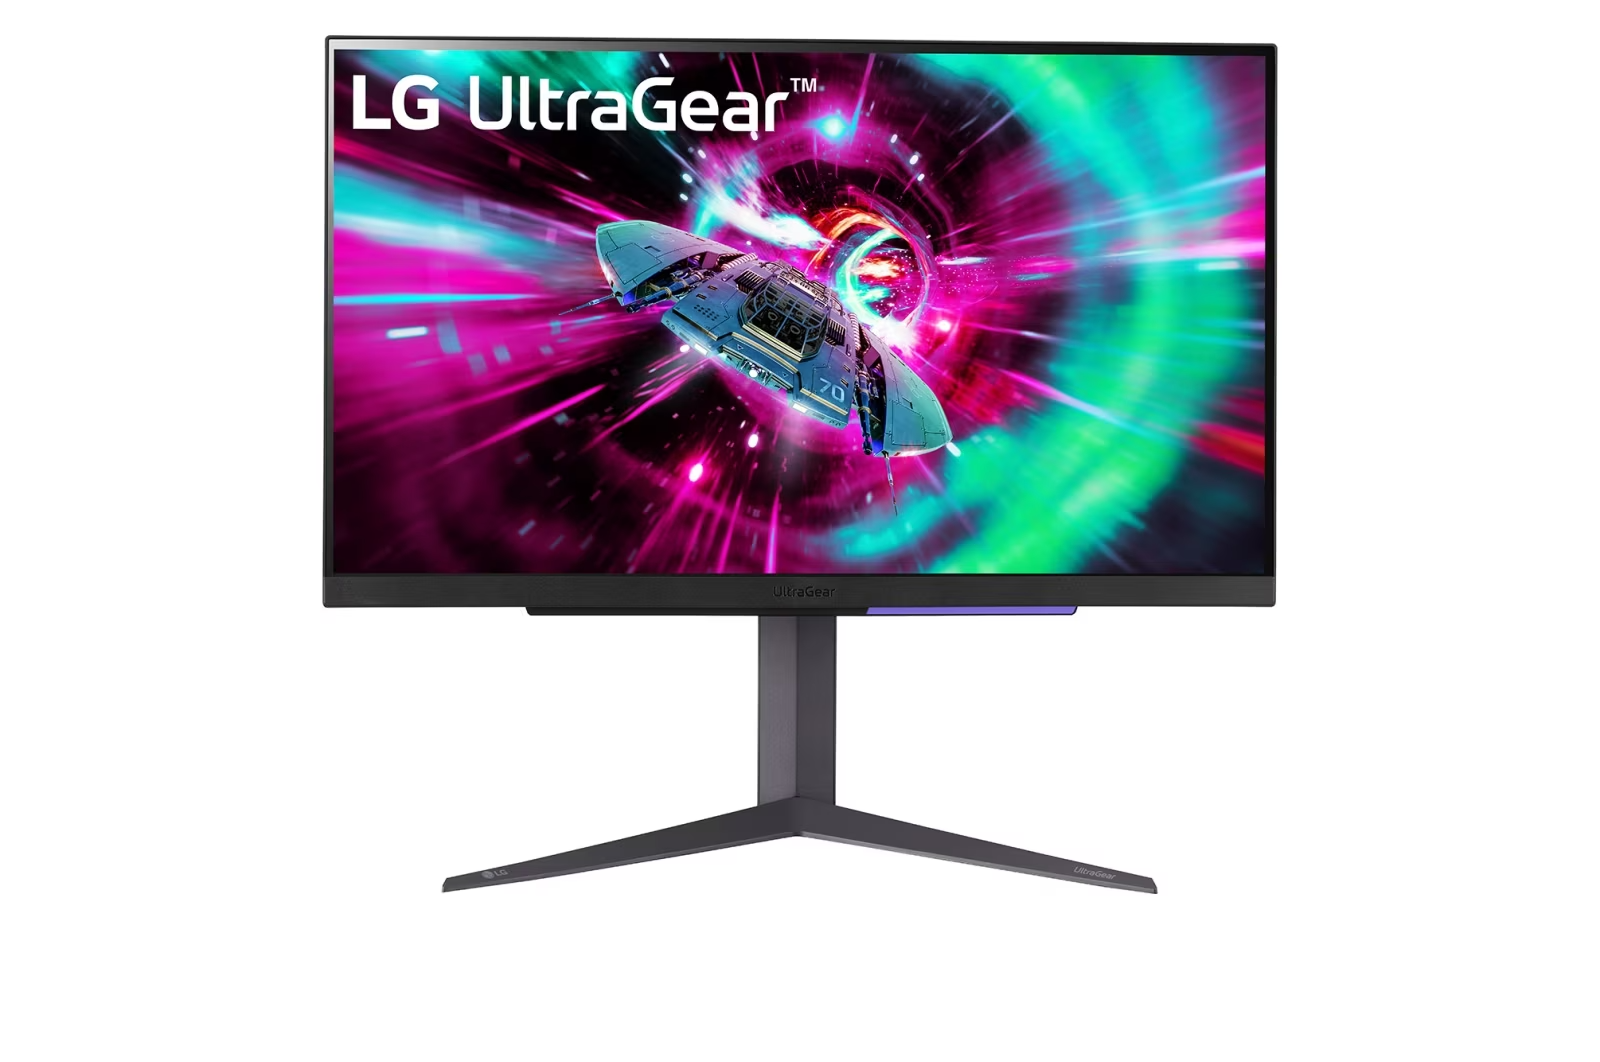 LG ultragear 27 monitor